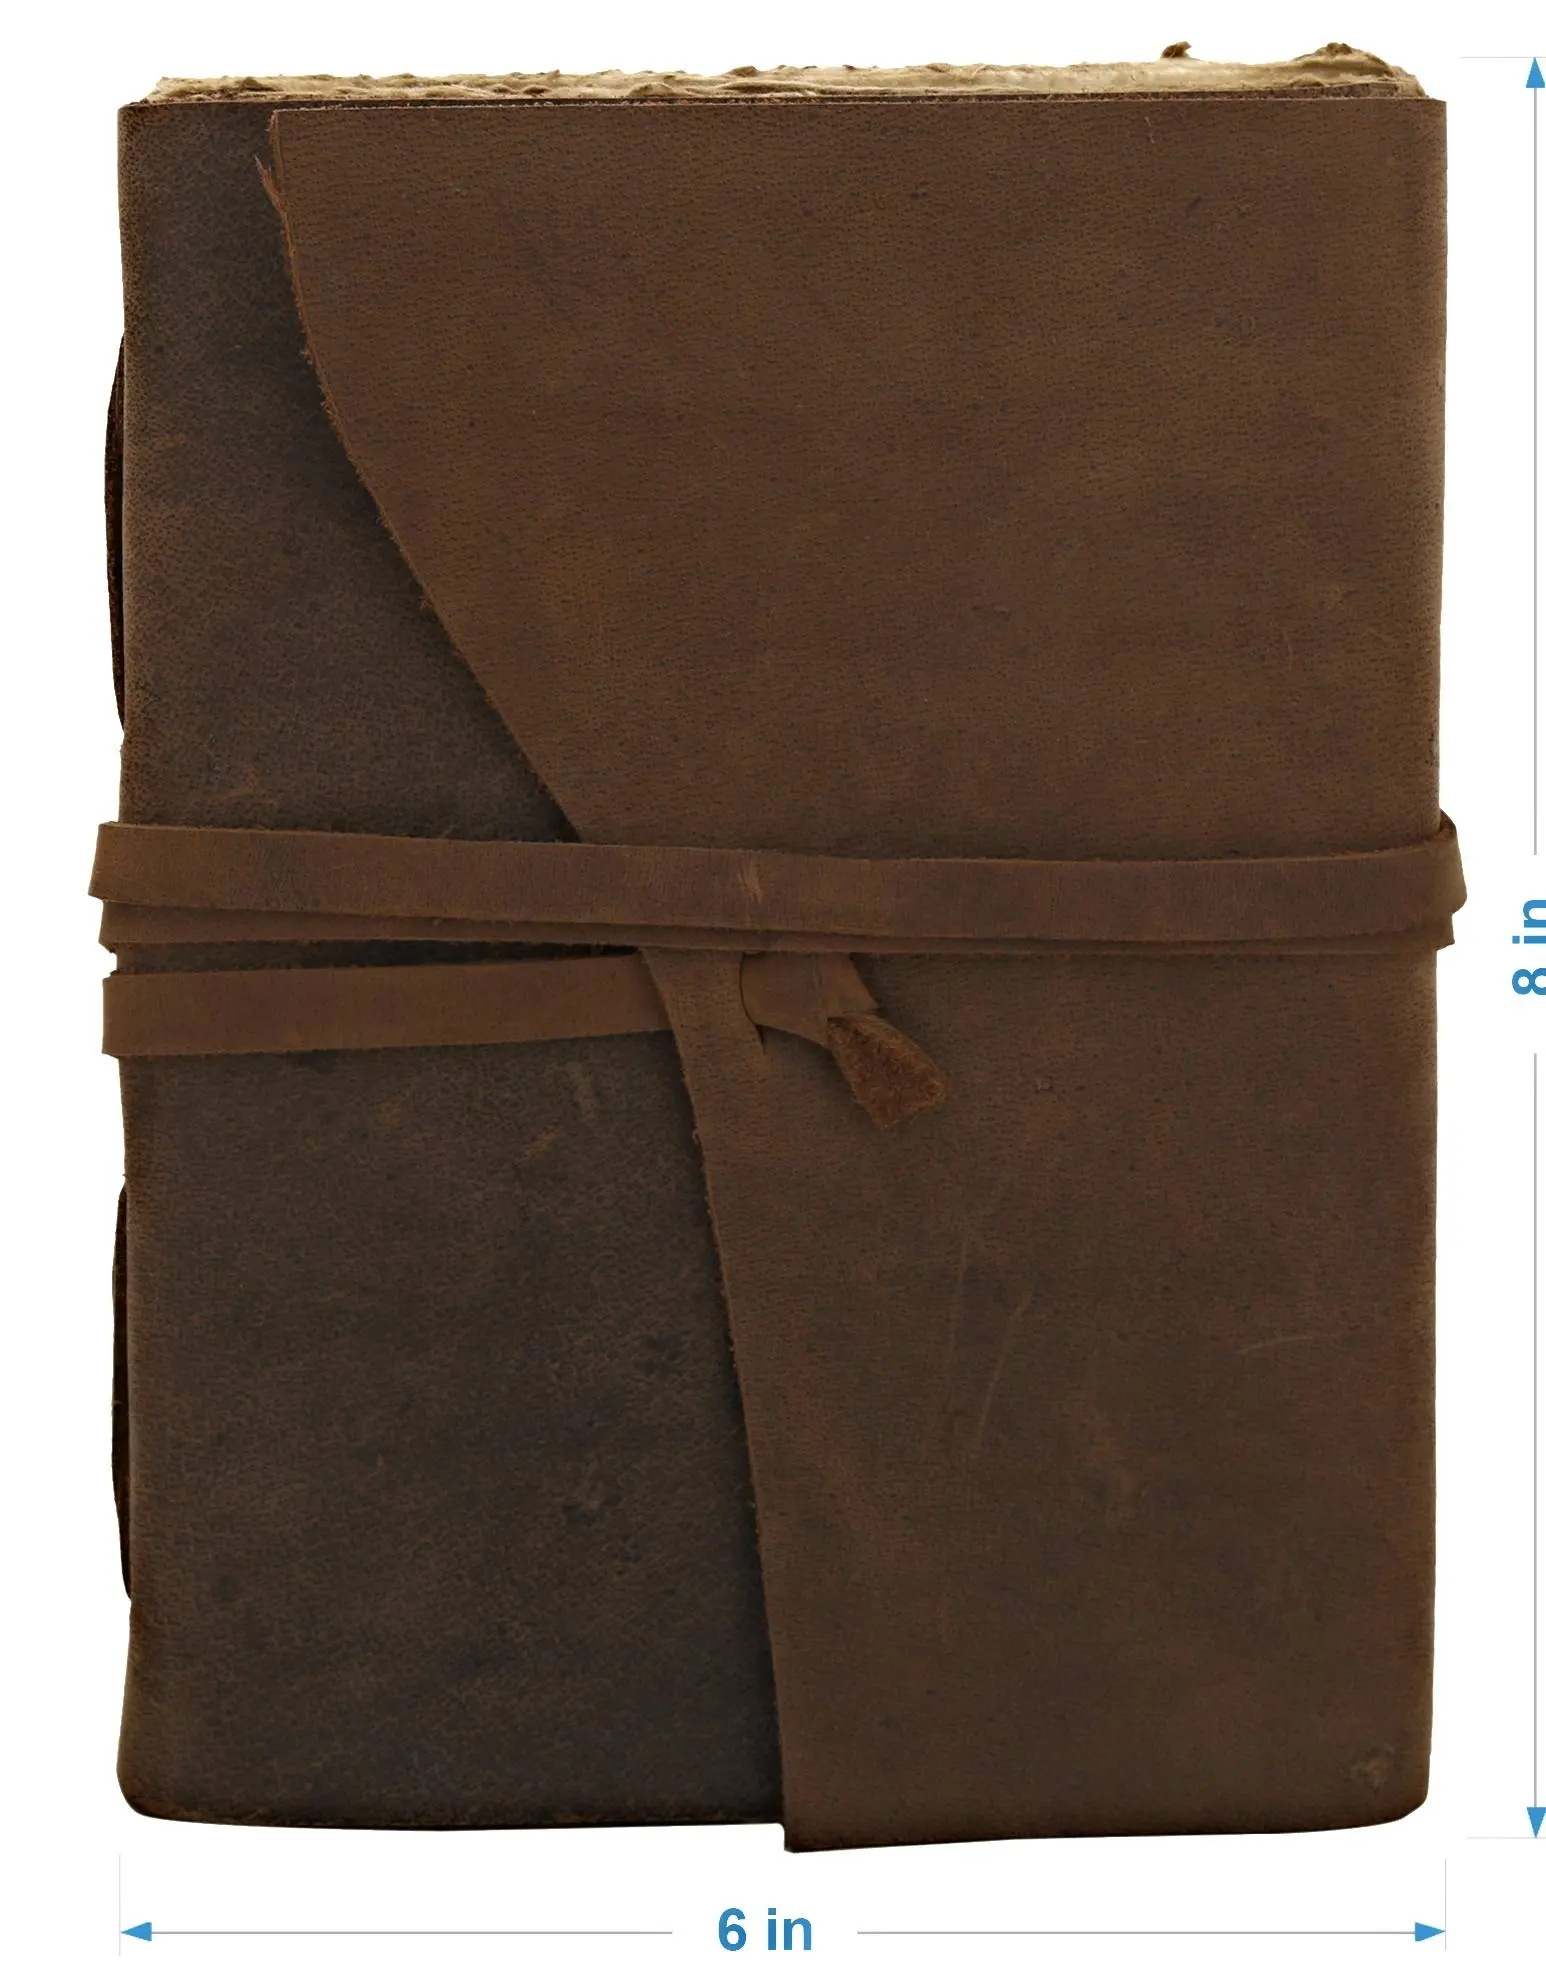 دفتر يوميات من الجلد بتصميم كلاسيكي وهو مذكرة سفر حصرية مصنوعة يدويًا ورقية ومجهزة بغلاف سادة وغير مبطنة